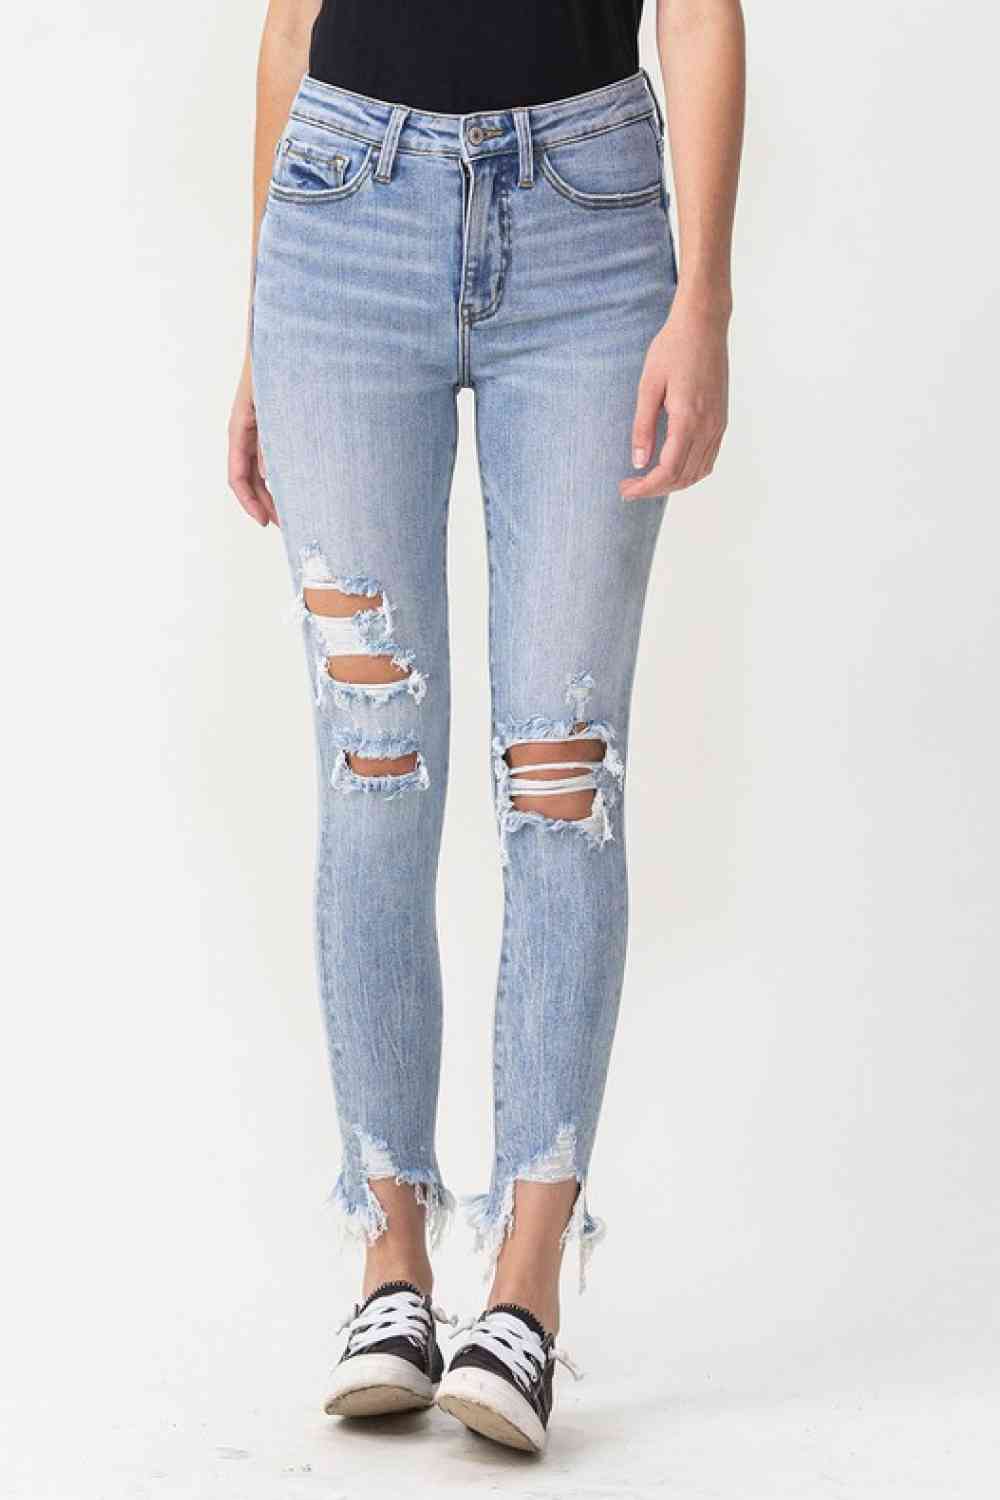 Lovervet Full Size Lauren Distressed High Rise Skinny Jeans Light